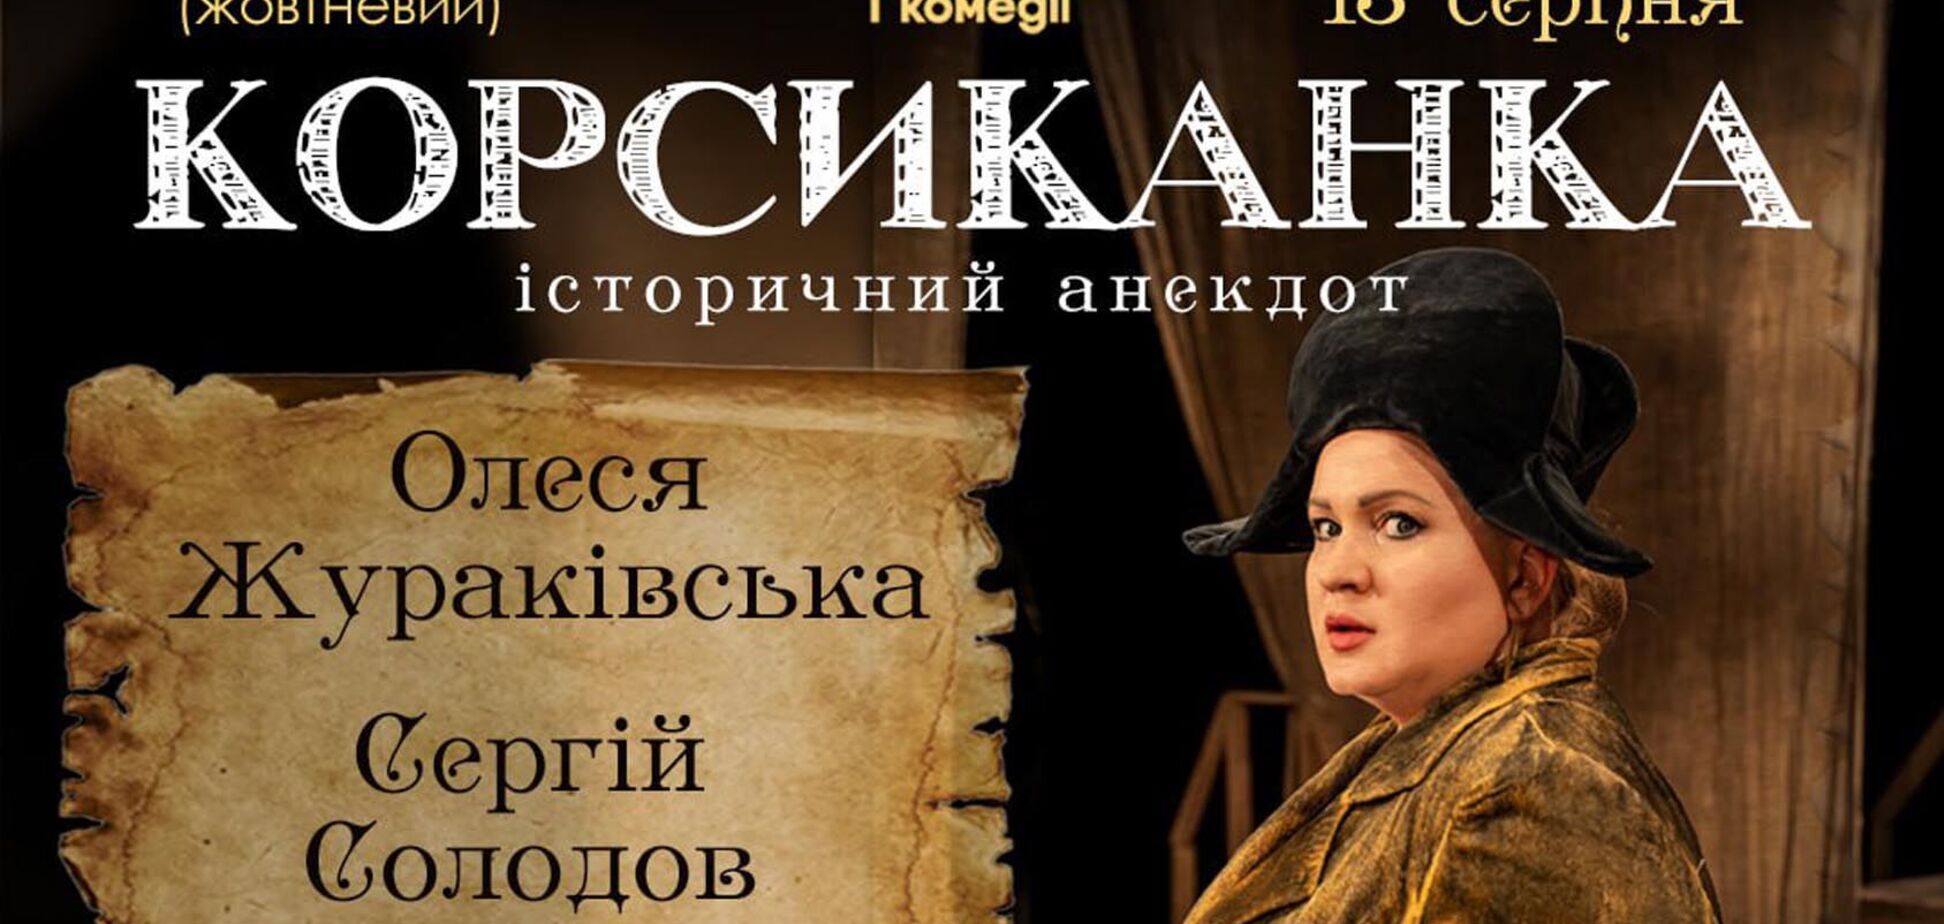 Знаменита вистава 'Корсиканка': у Києві відбудеться бенефіс Олесі Жураківської у день її народження 